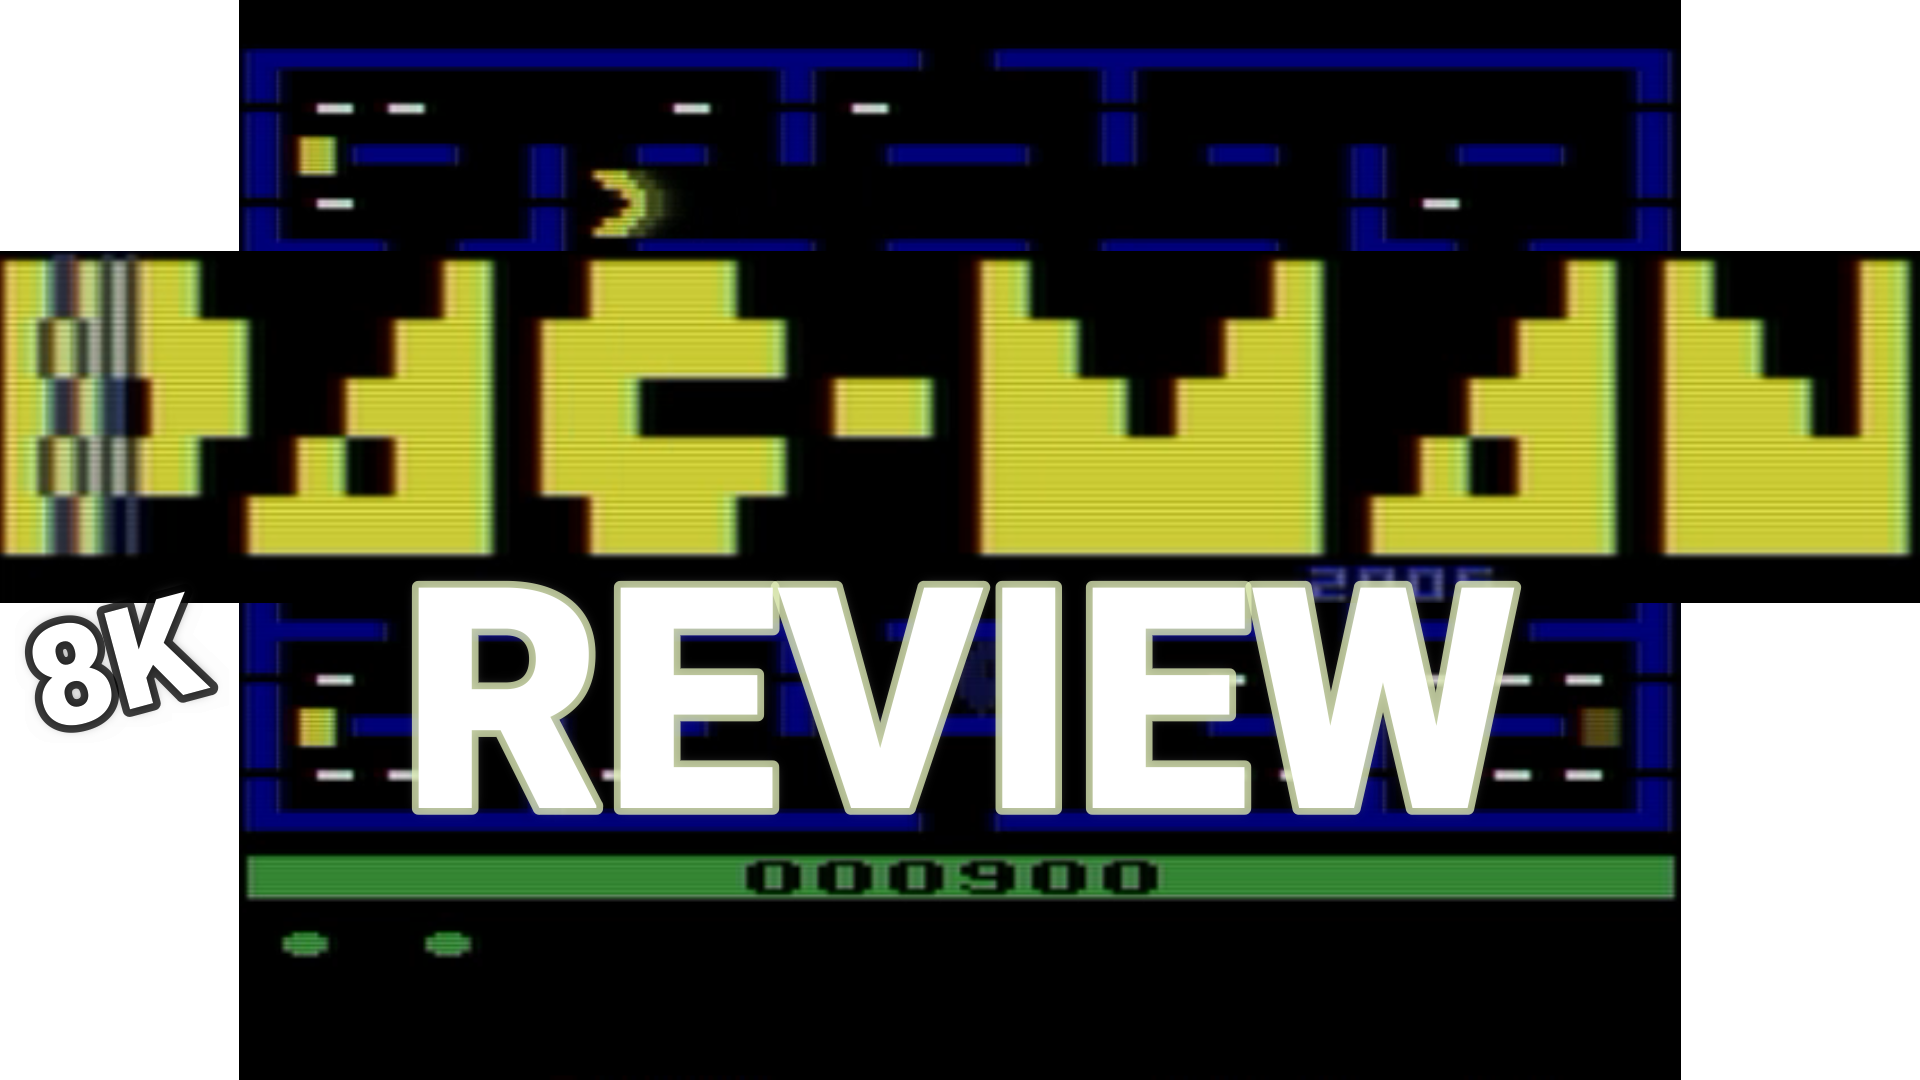 Pacman 8K review by Nukey Shay (Hack of Atari Pac-Man)